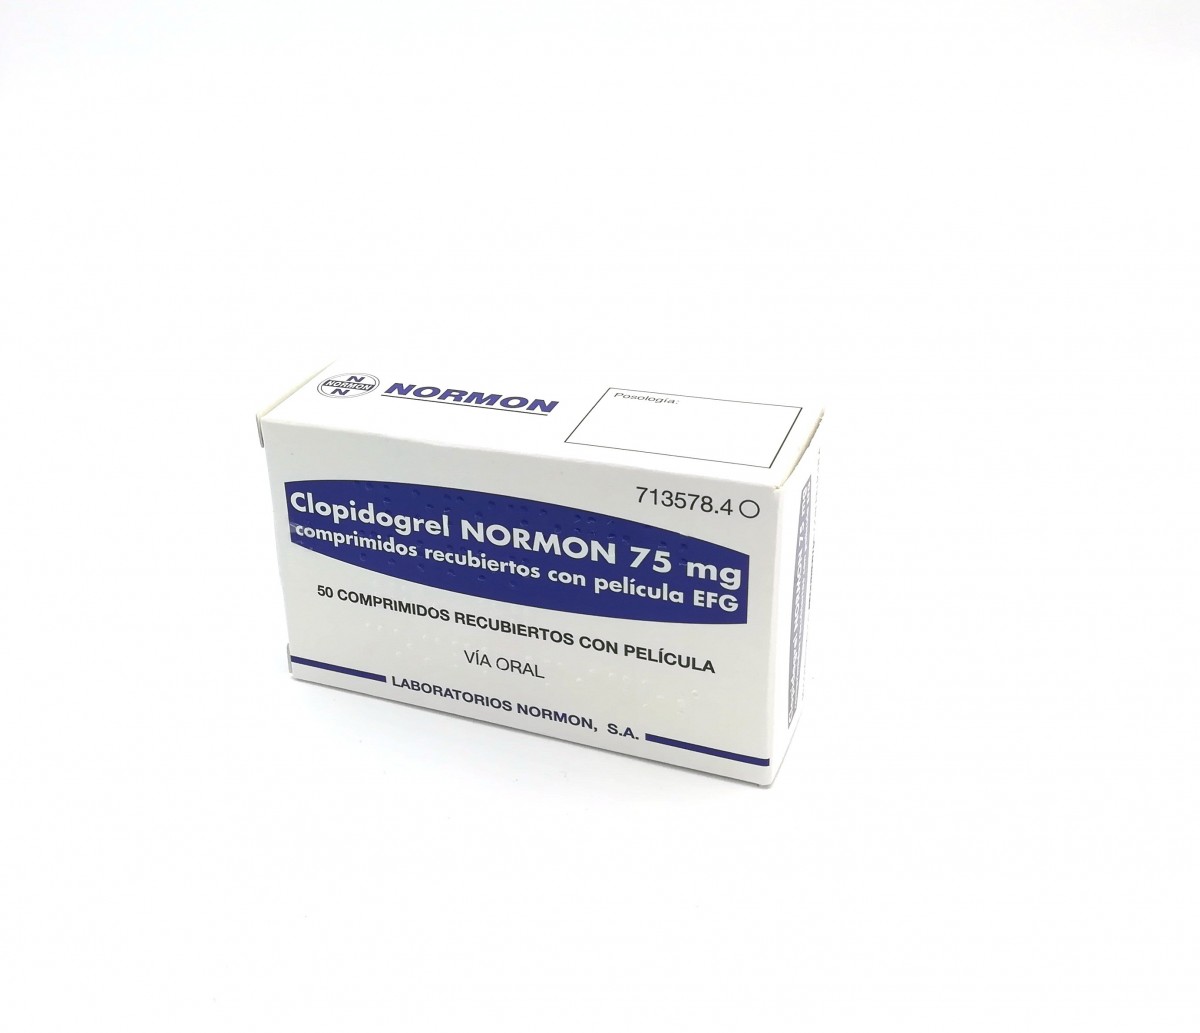 CLOPIDOGREL NORMON 75 mg COMPRIMIDOS RECUBIERTOS CON PELICULA EFG, 50 comprimidos (Blister Al/PVDC/PE/PVC) fotografía del envase.